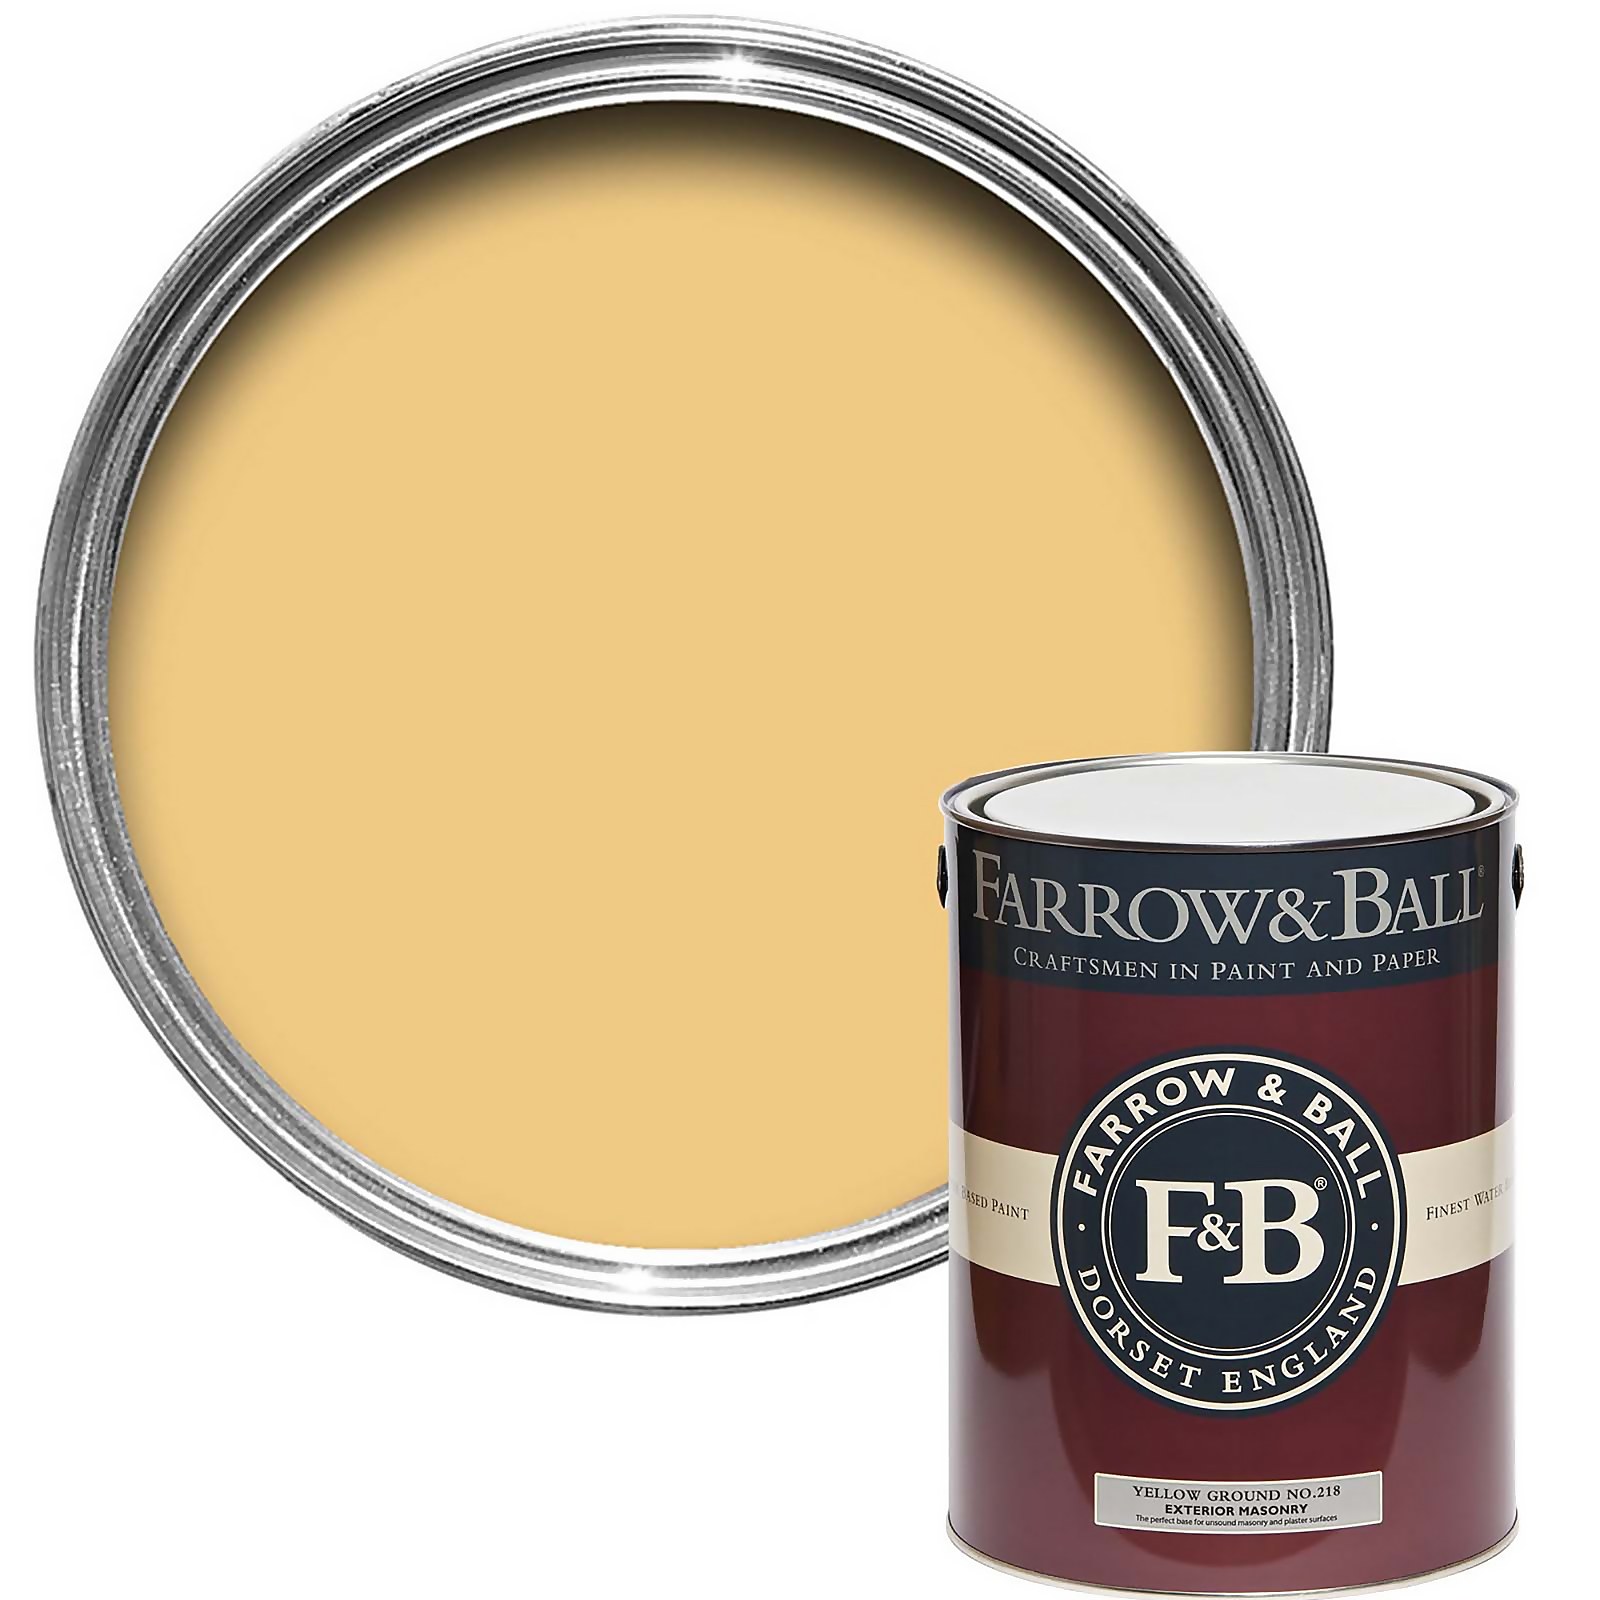 Farrow & Ball Exterior Masonry Paint Yellow Ground - 5L